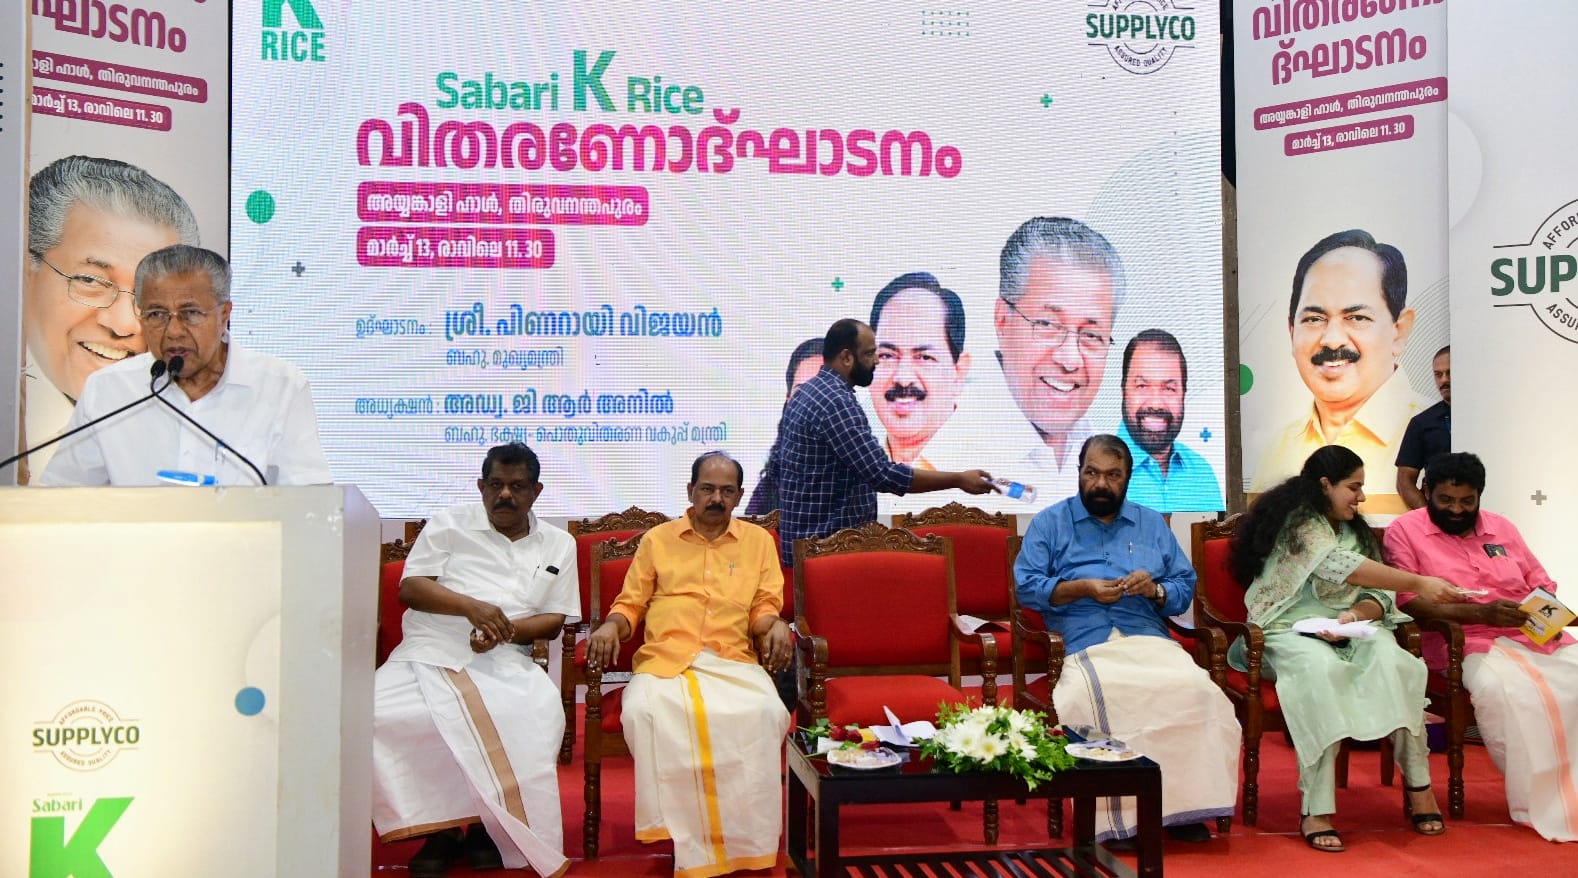 Chief Minister Pinarayi Vijayan inaugurating the launch of K-Rice in Thiruvananthapuram. (Supplied)